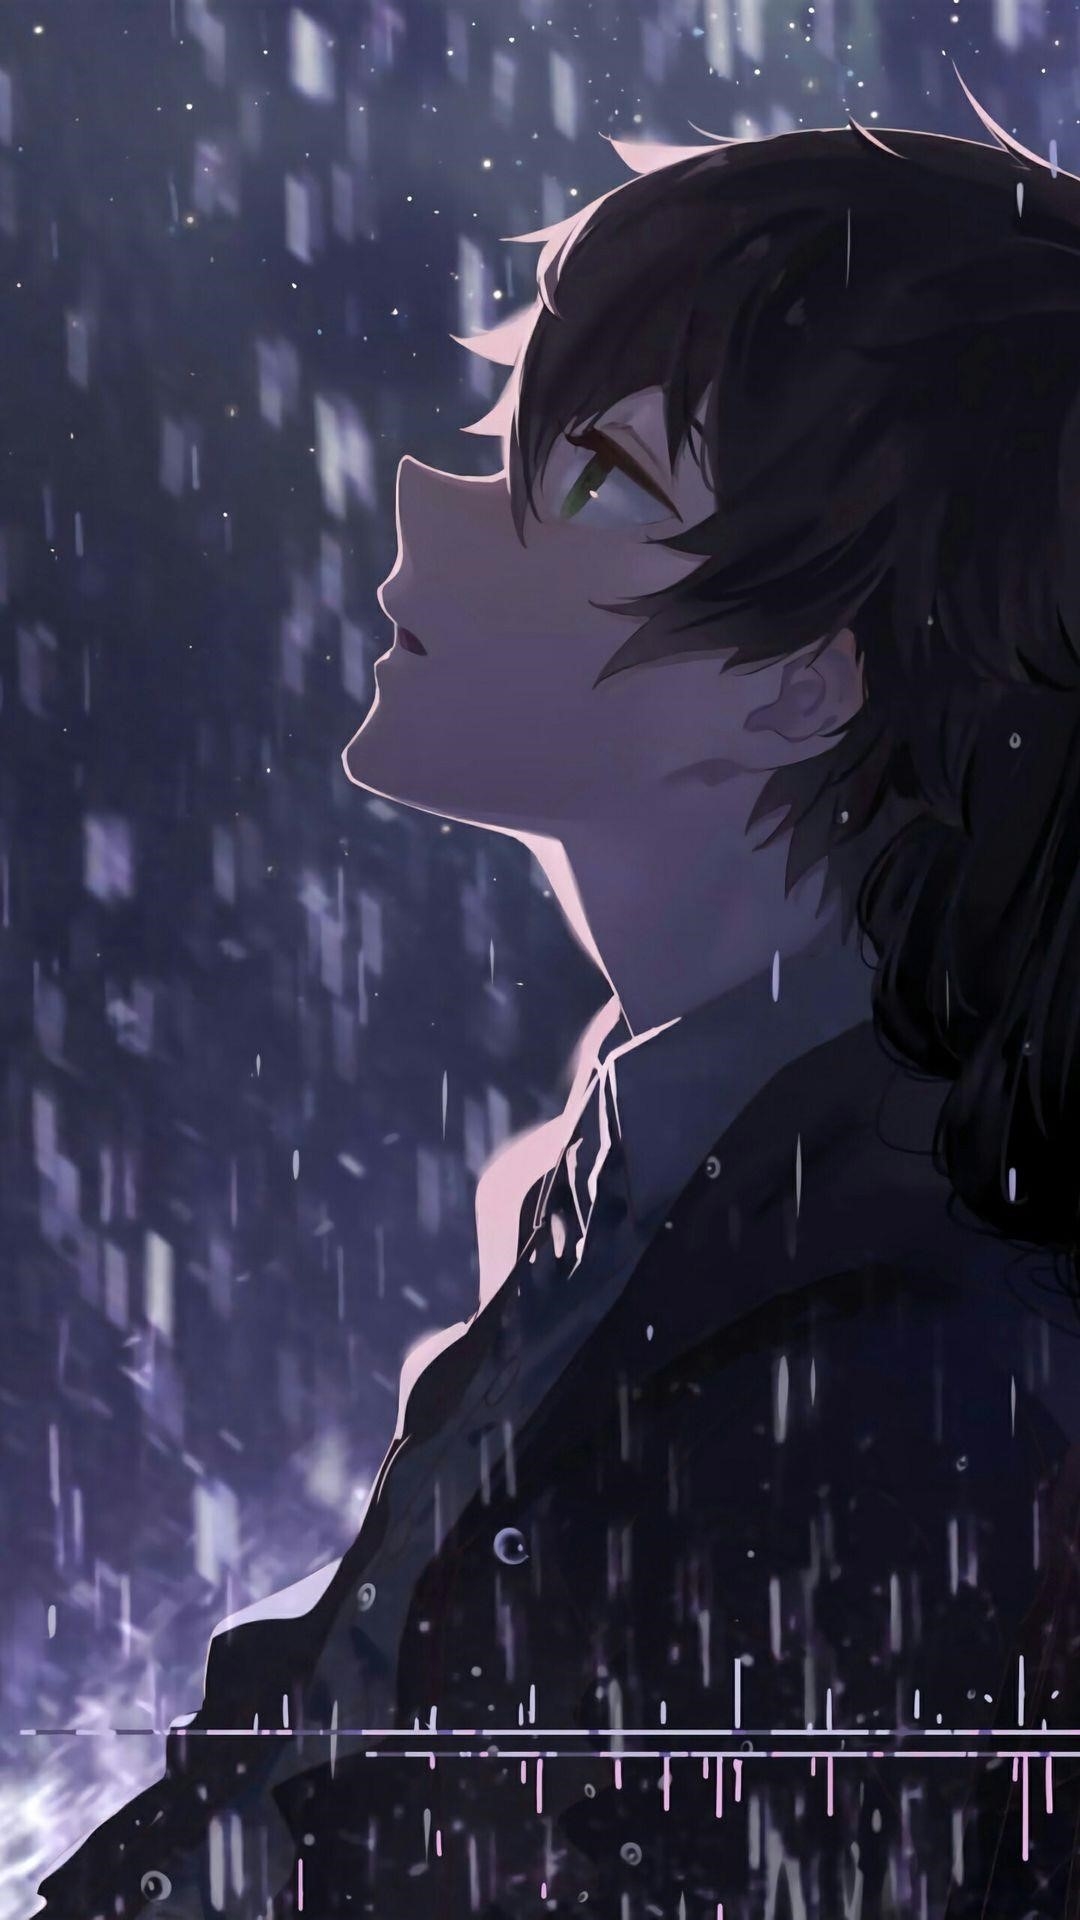 Ảnh anime cô đơn một mình thể hiện cảm giác cô đơn và cách riêng biệt của một người, tạo nên một không gian độc đáo và sâu lắng.